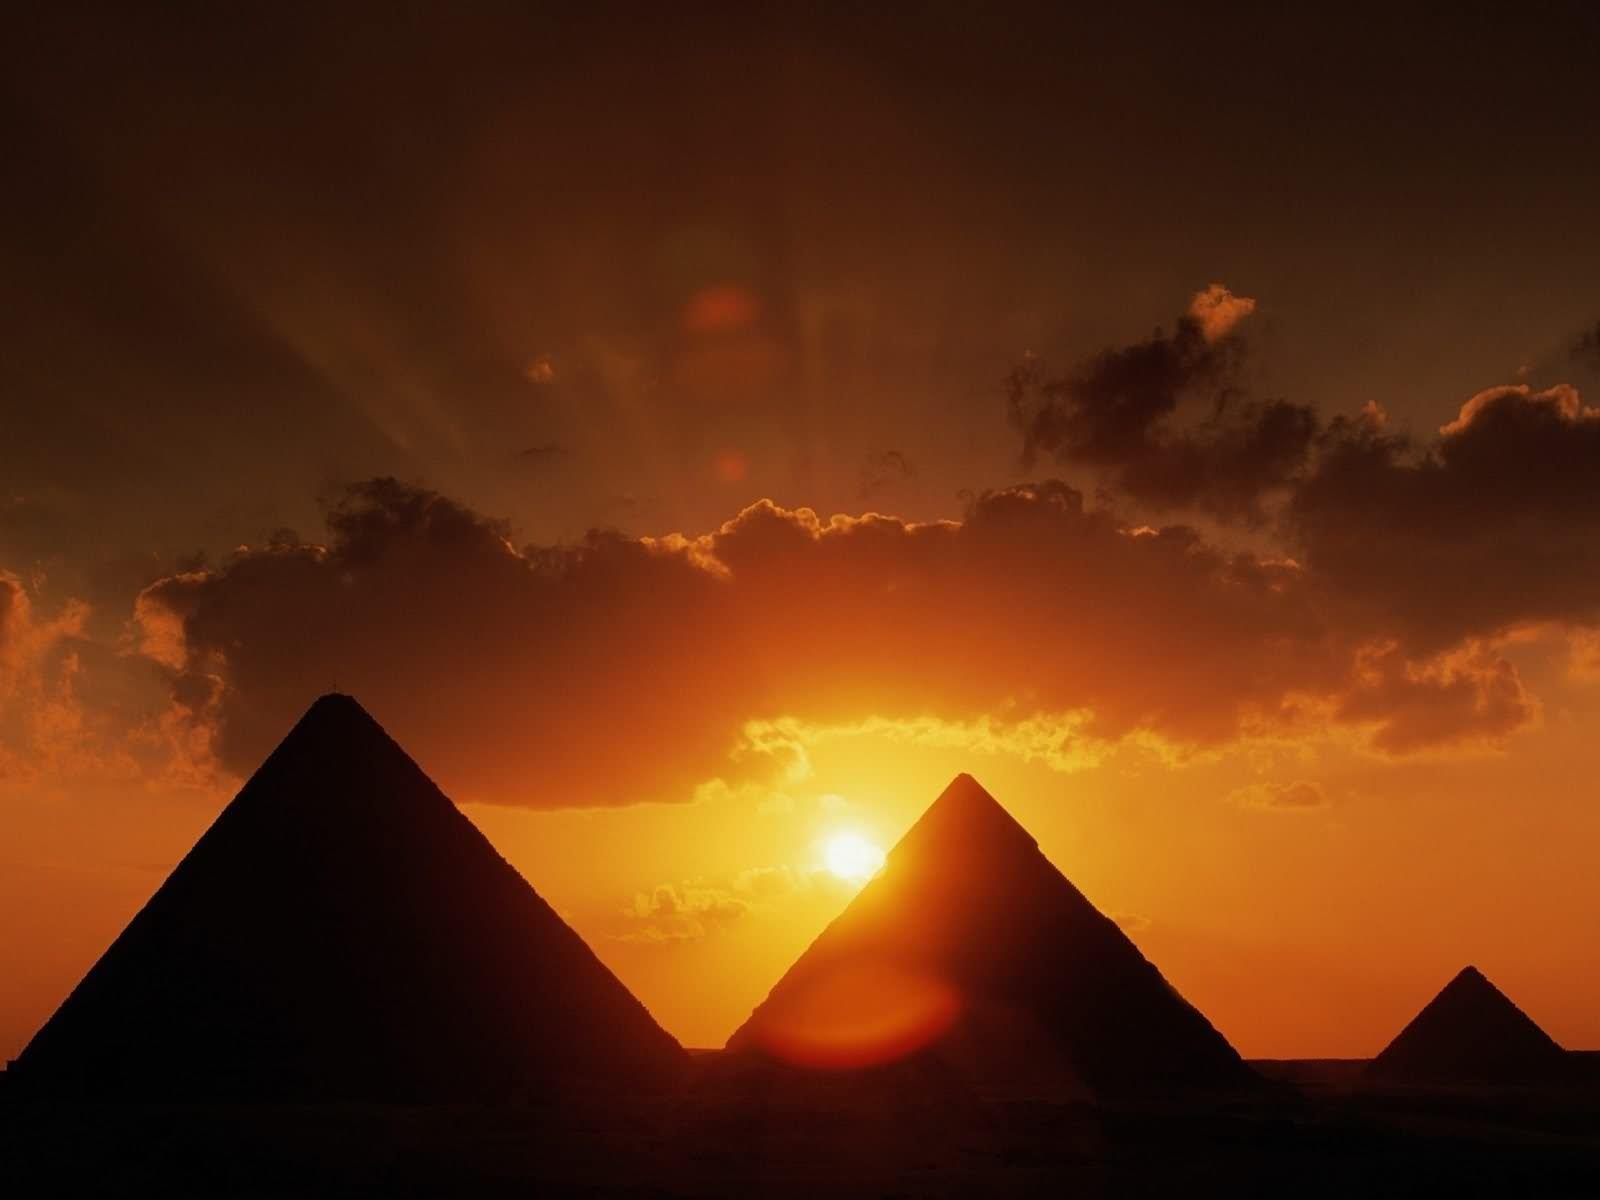  غروب شمس في القاهرة الساحرة 